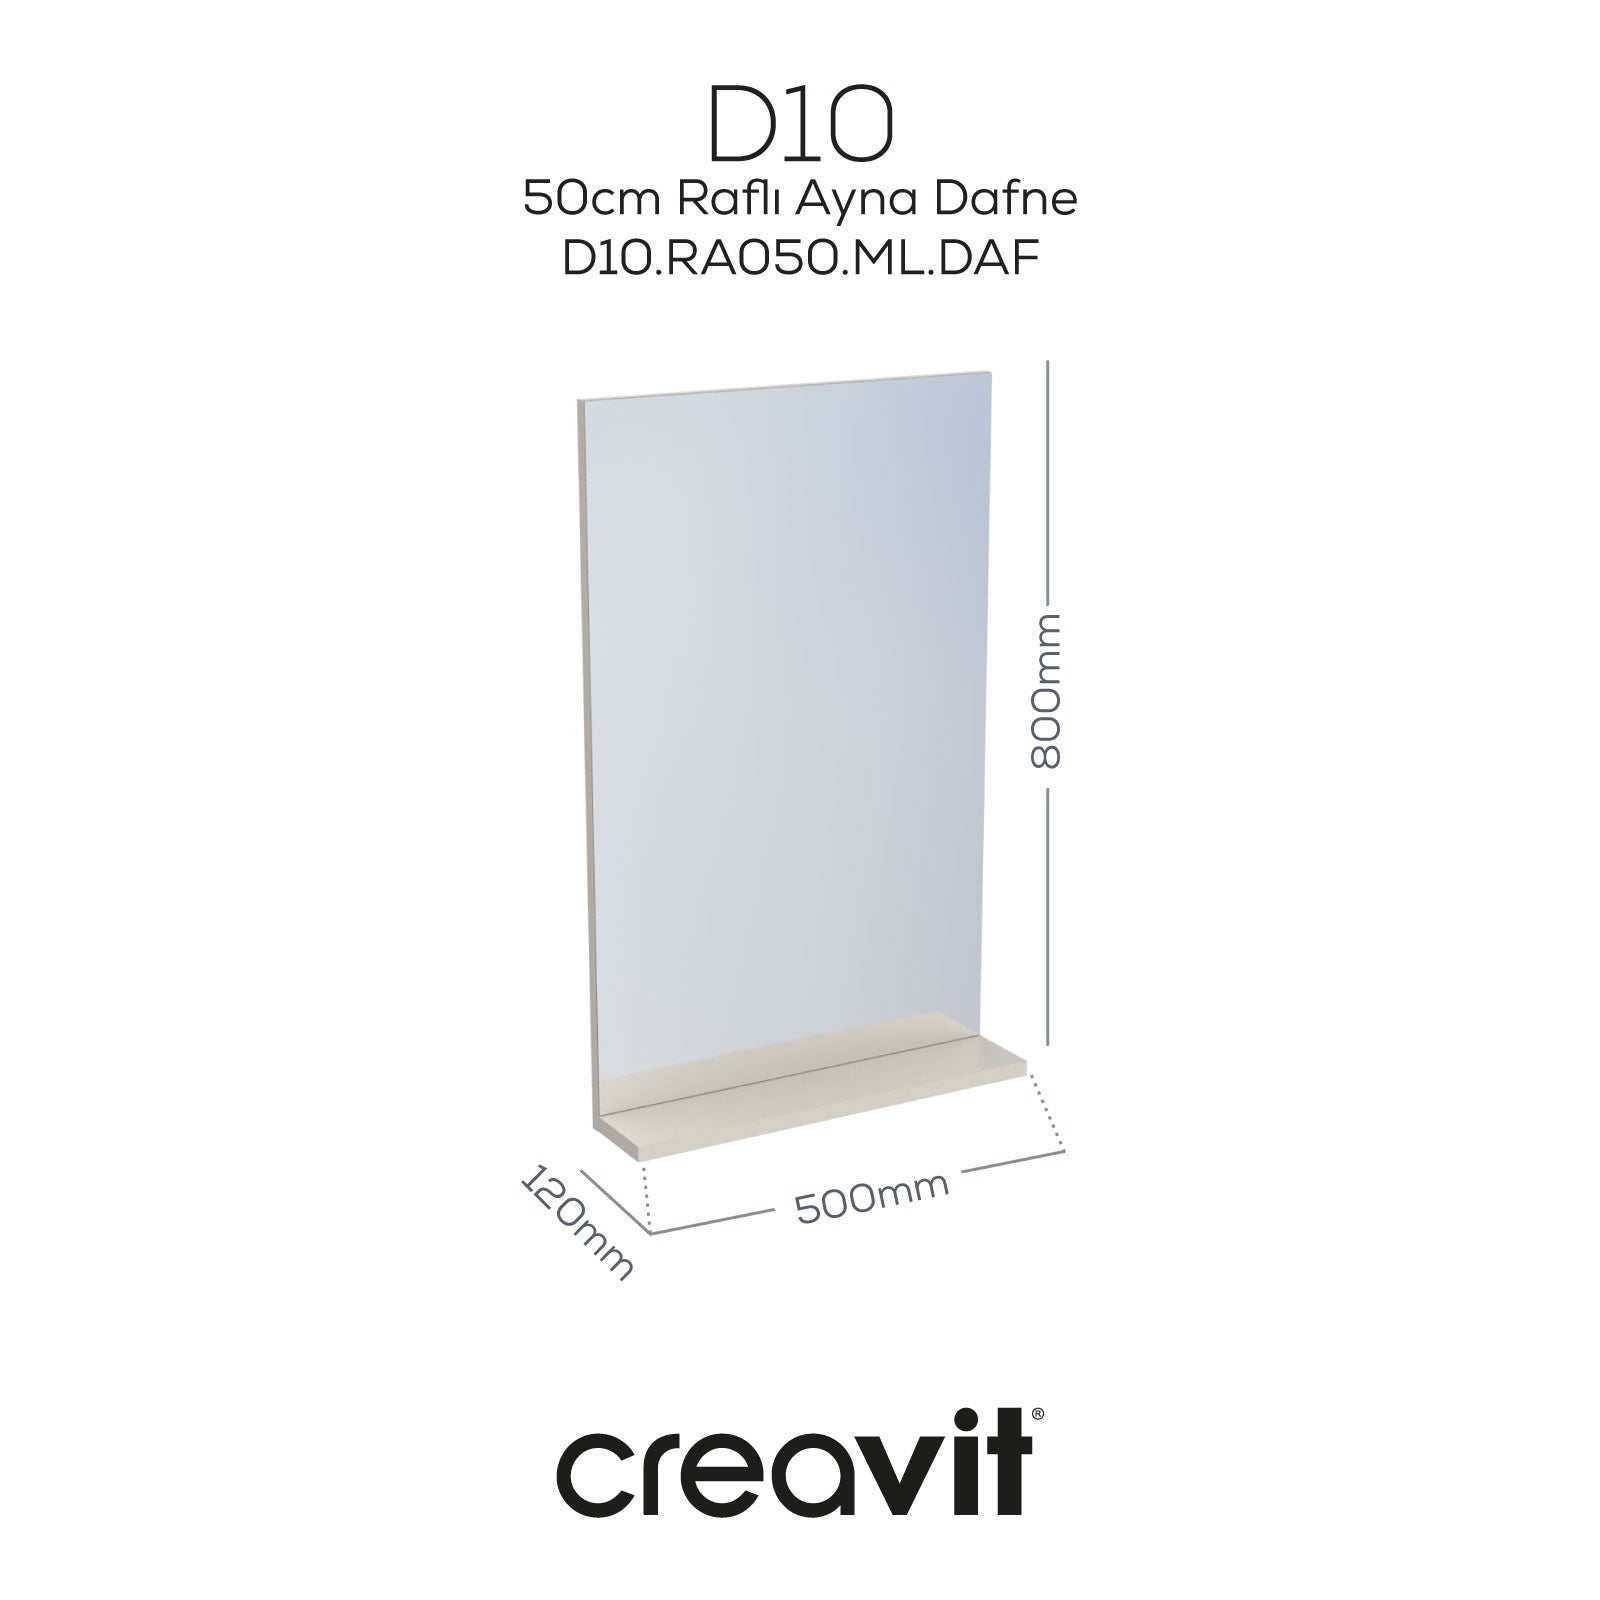 D10 50 cm Melamin Raflı Ayna Dafne - Creavit | Banyo Bu Tarafta